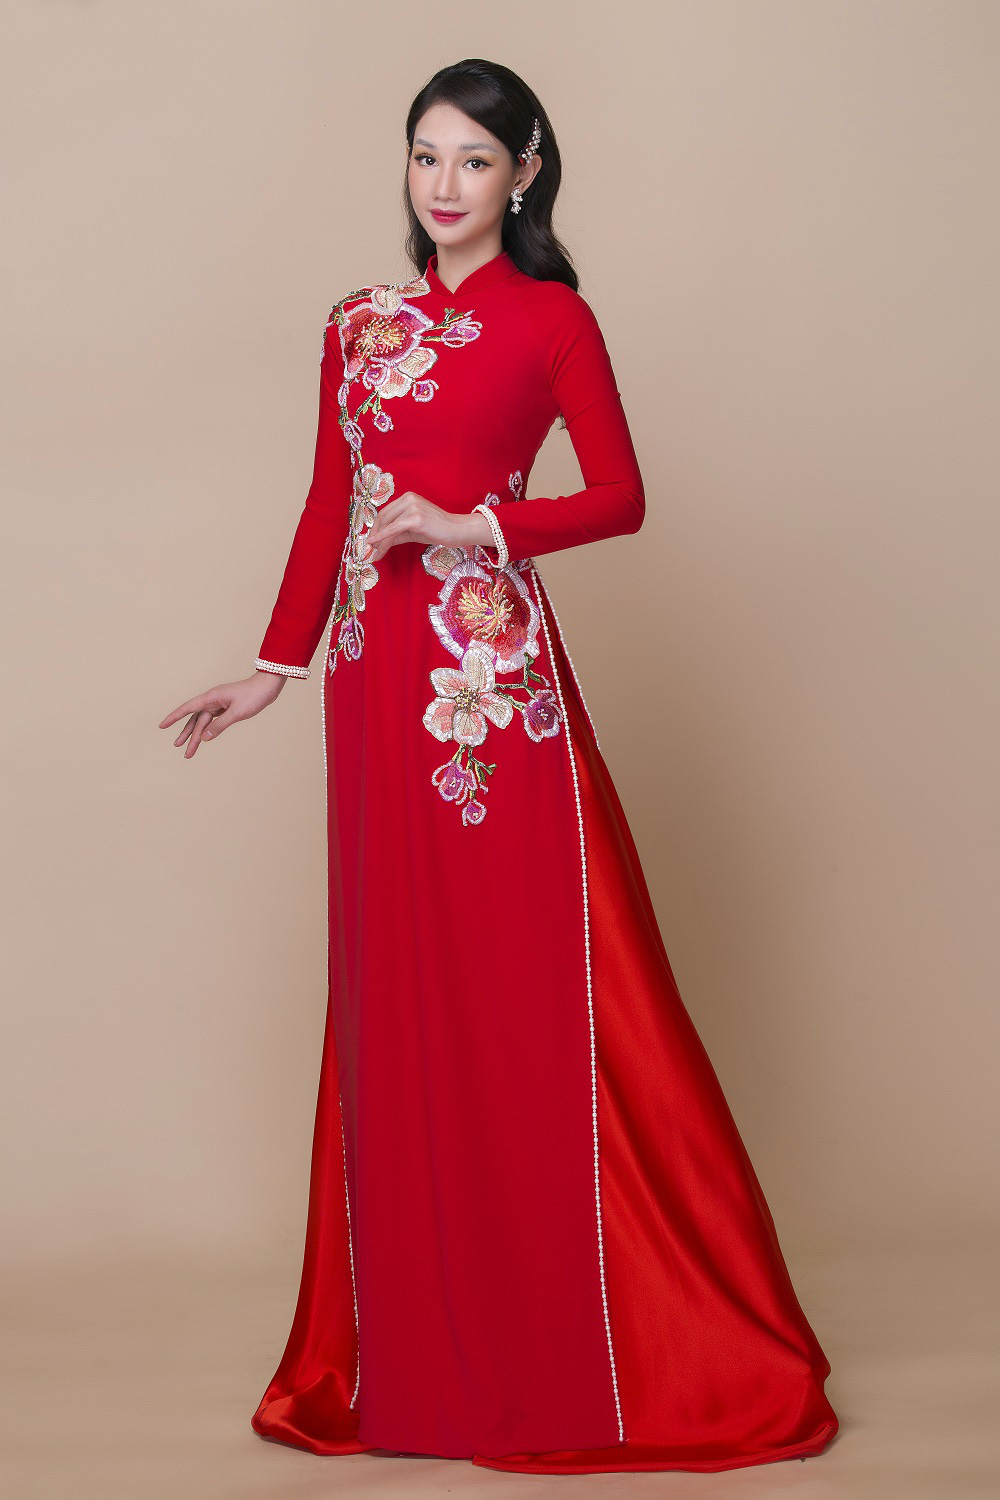 Hot girl Quỳnh Chi xinh đẹp khi diện áo dài cưới - Ảnh 7.